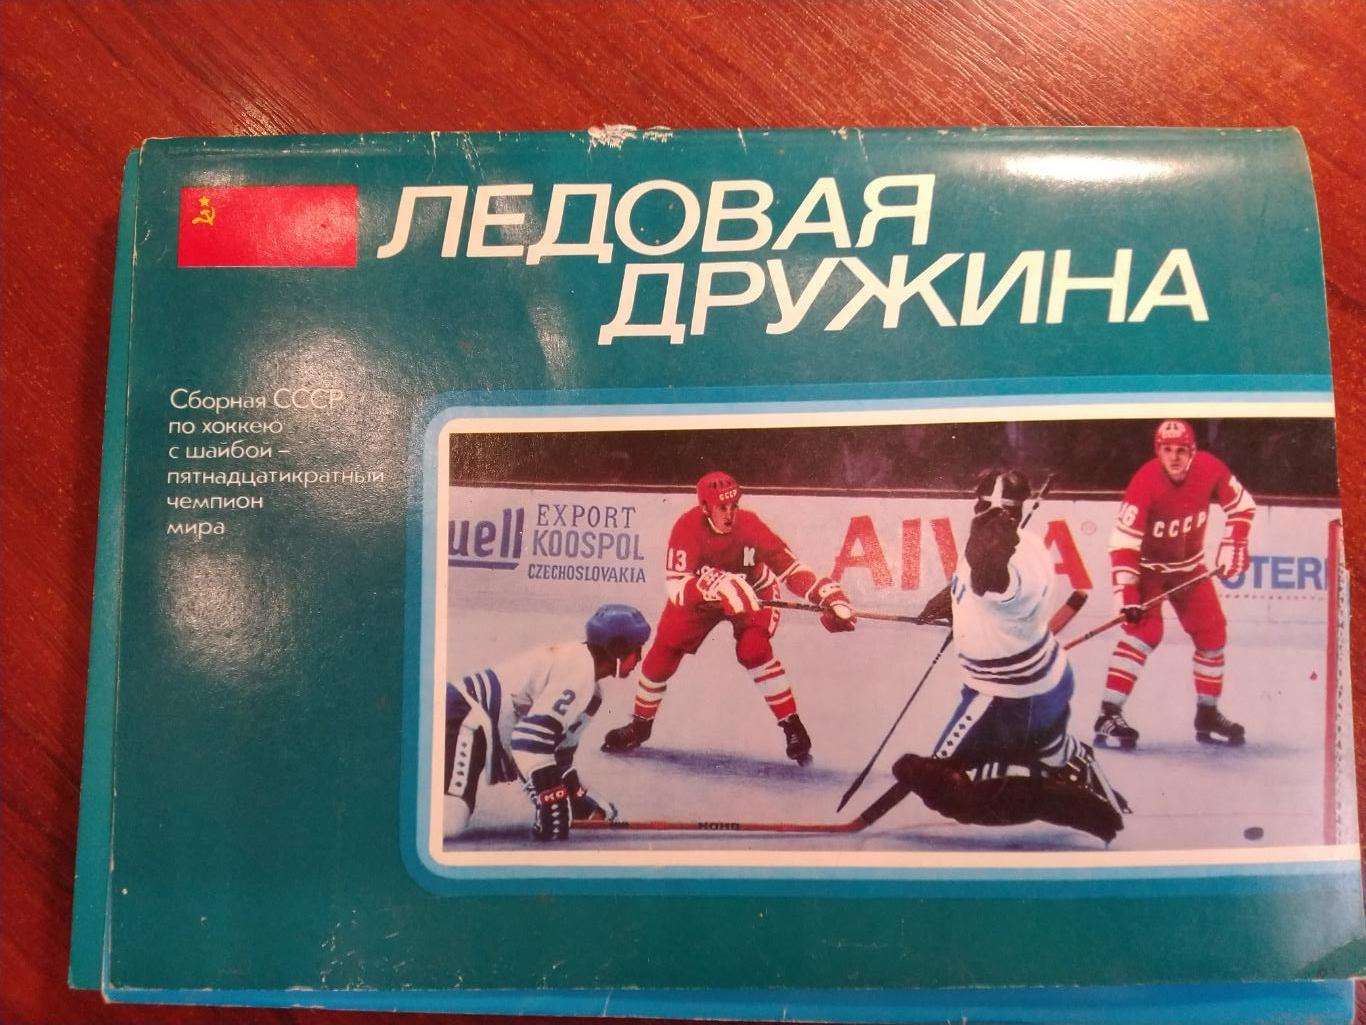 Ледовая дружина -сборная СССР по хоккею 15-кратный чемпион мира 1979